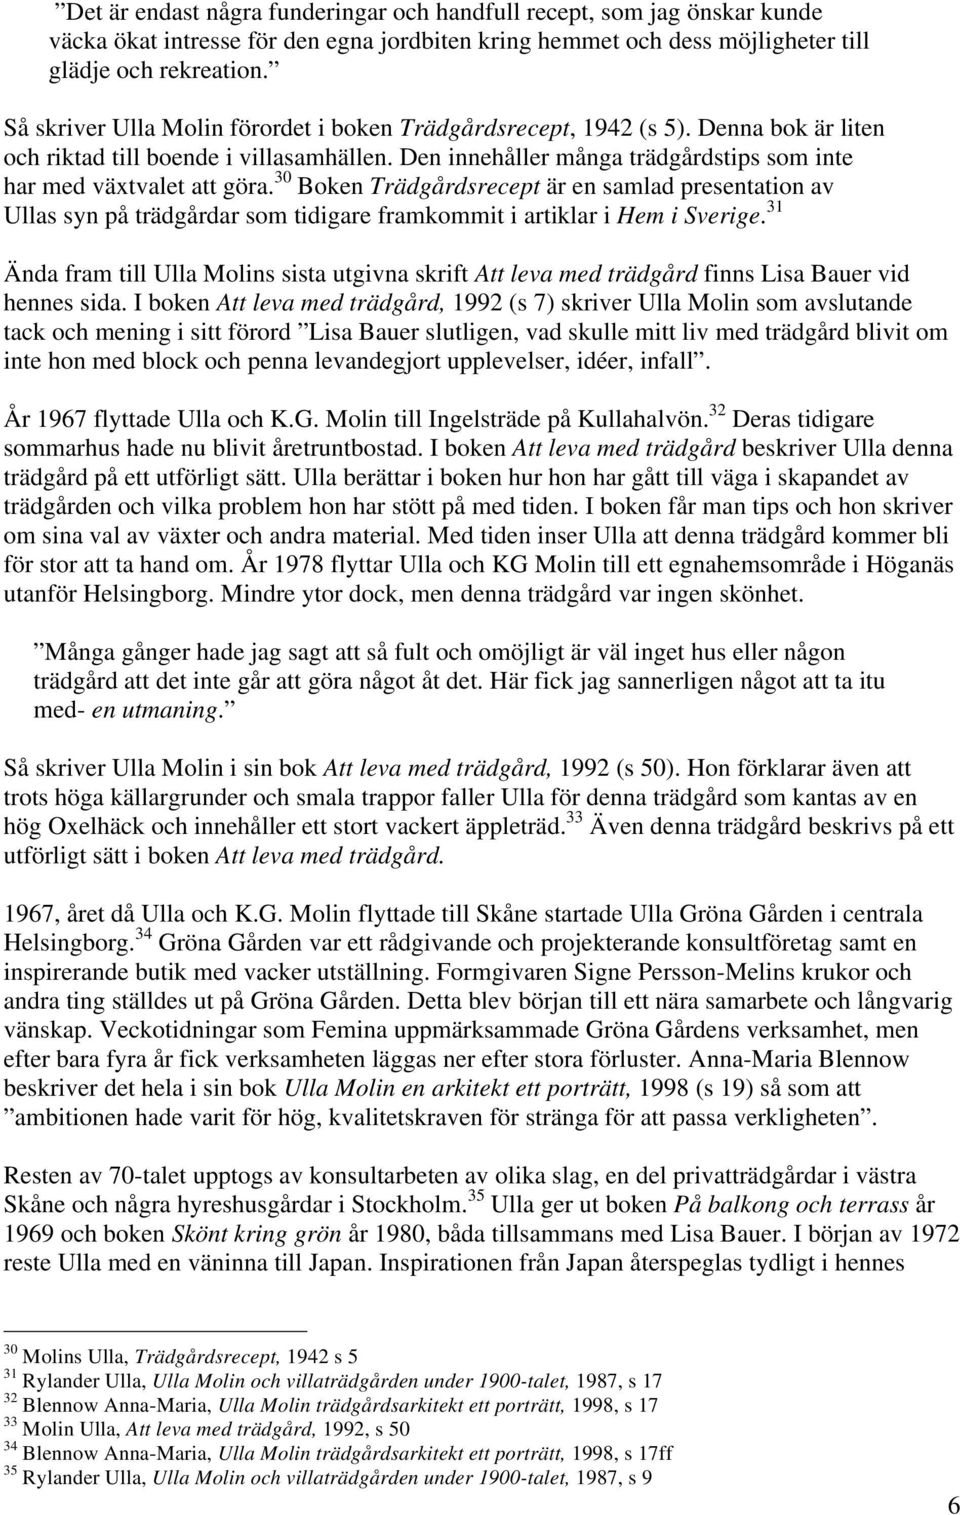 30 Boken Trädgårdsrecept är en samlad presentation av Ullas syn på trädgårdar som tidigare framkommit i artiklar i Hem i Sverige.